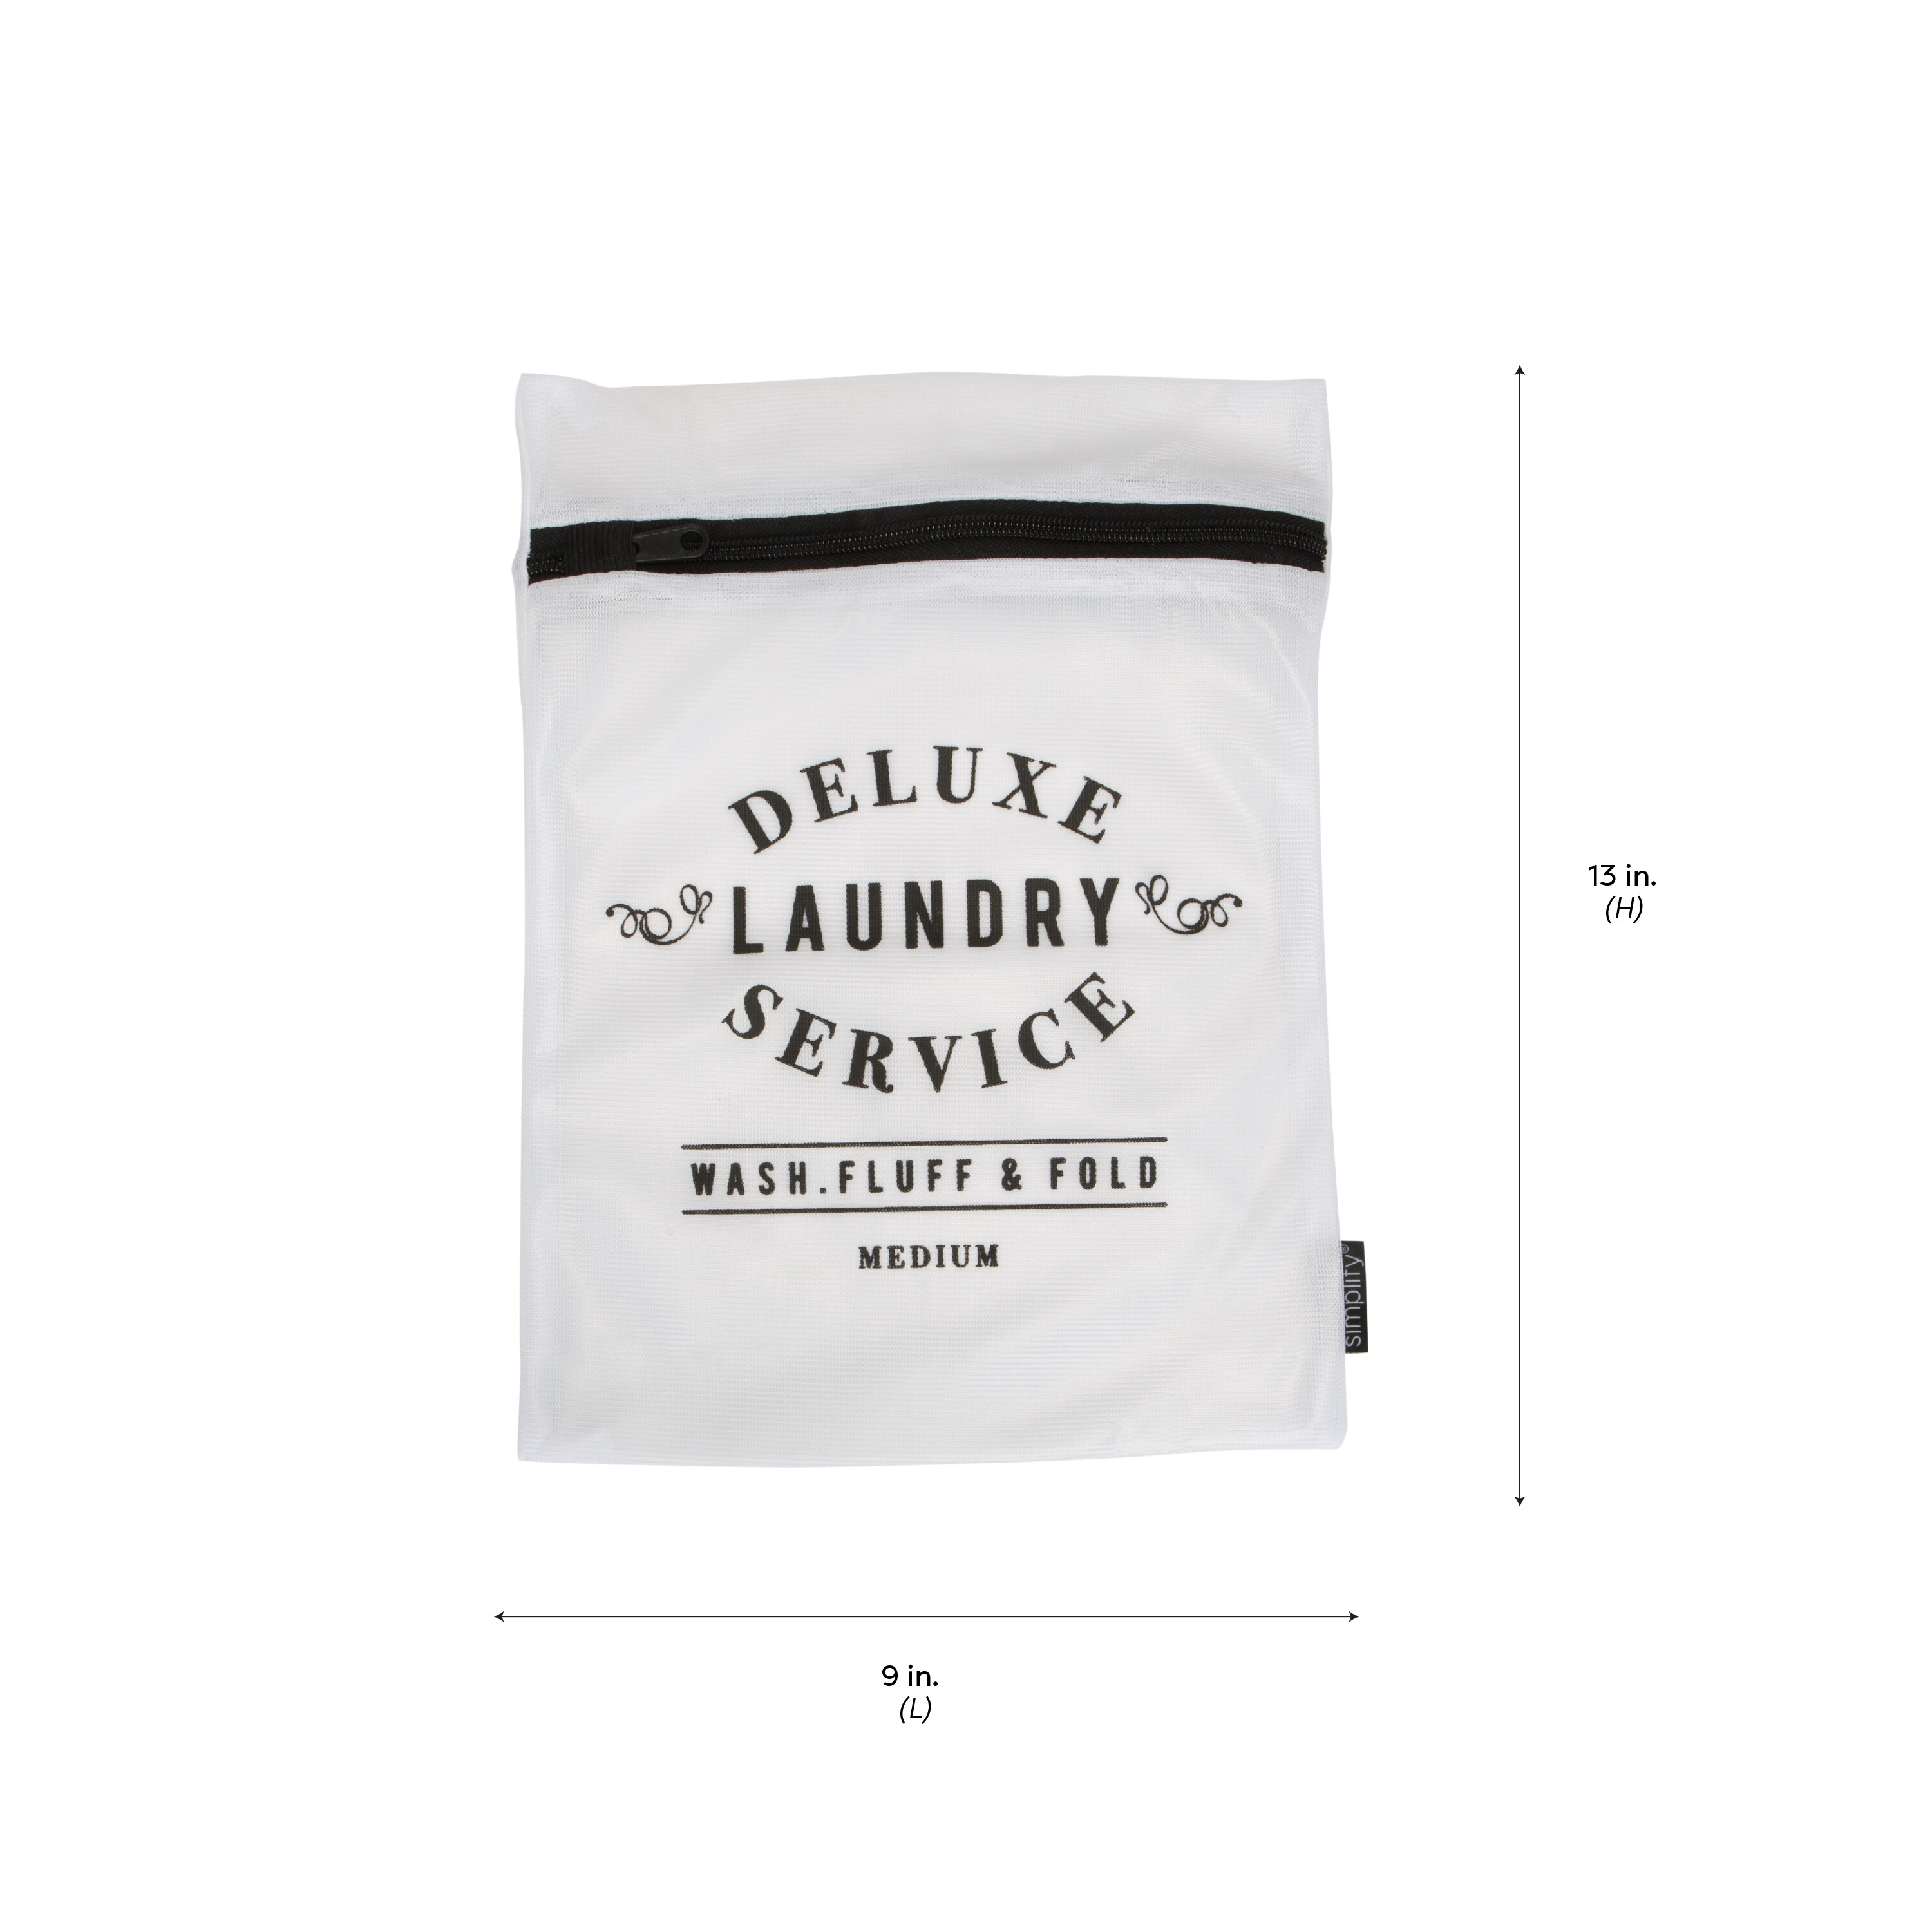 Delicates Mesh Laundry Bag - Hosiery Bag 6+1 Set: 2 Jumbo 2 Large 2 Medium  & Ironing Clothes - Colored Mesh Washing Drying Laundry Bag for Bra